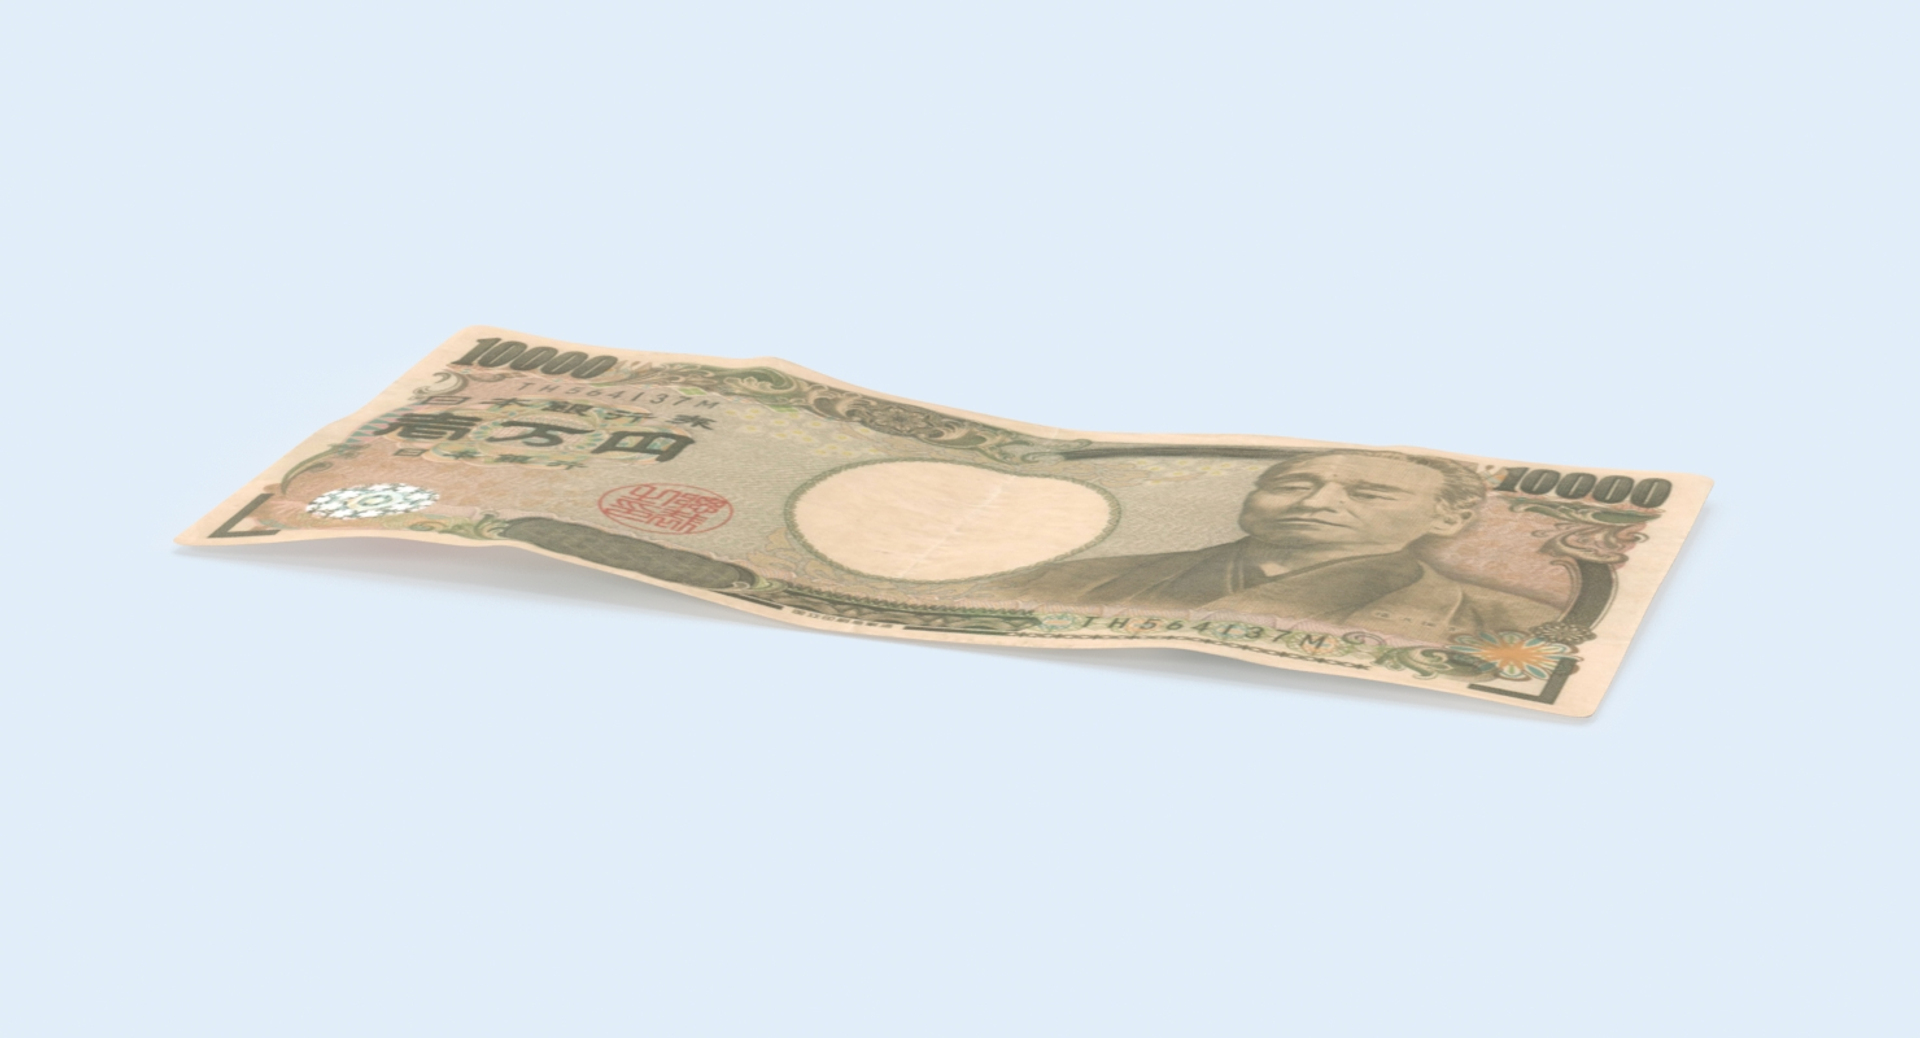 max 10000 yen note single